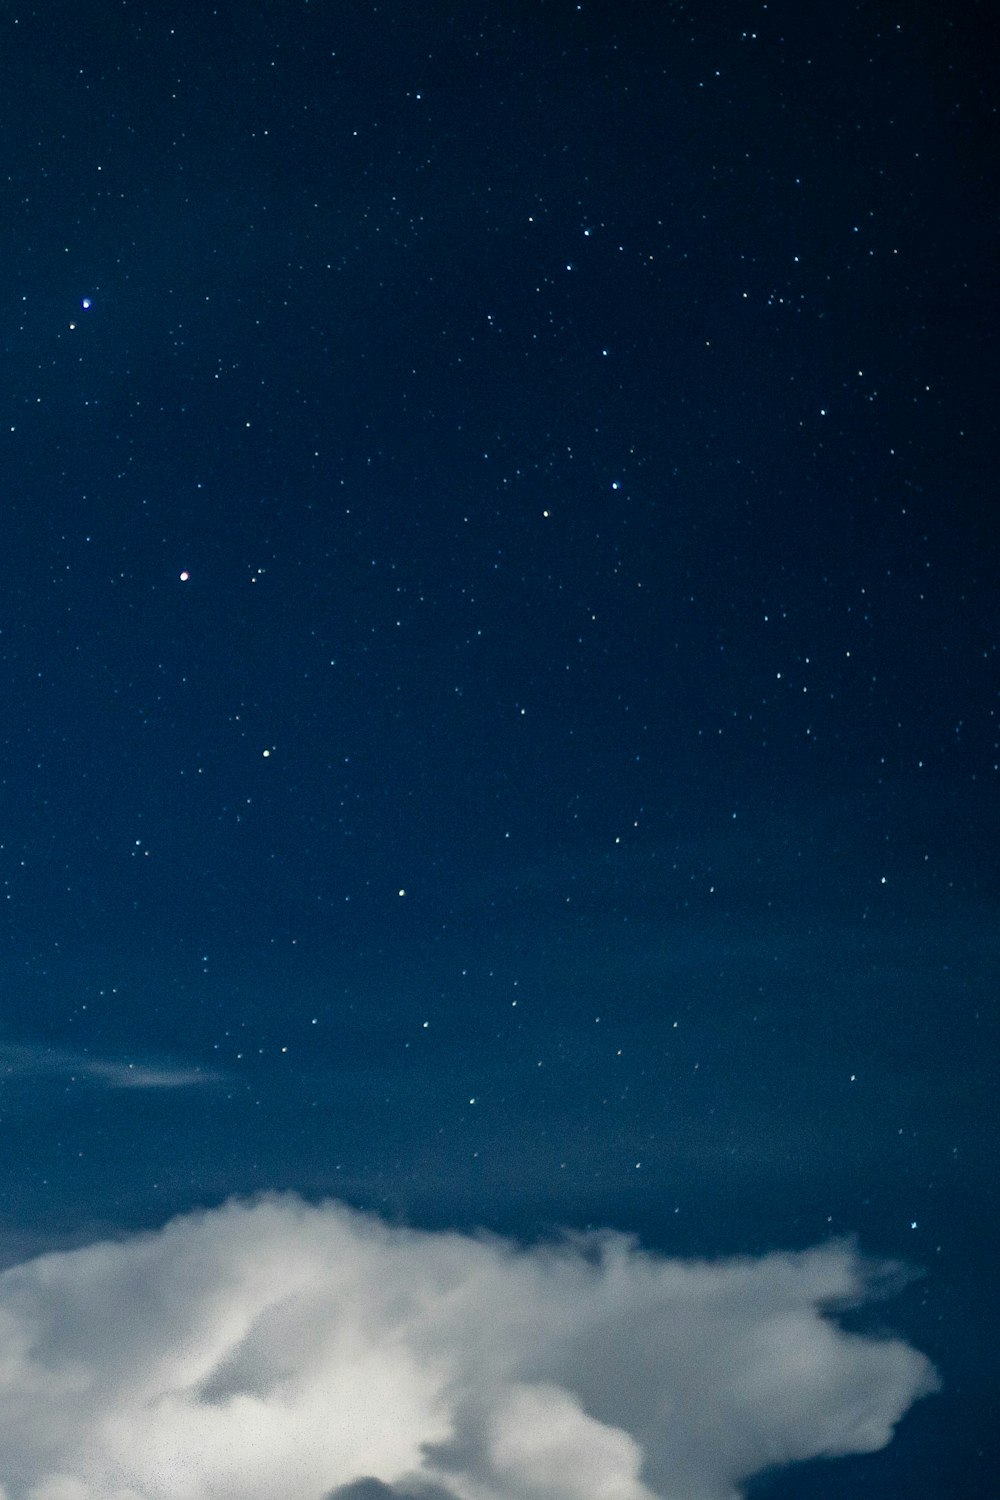 Hình ảnh bầu trời đêm miễn phí: Tận hưởng trải nghiệm đắm say với những bức ảnh đẹp tuyệt vời về bầu trời đêm miễn phí. Thật tuyệt vời khi có thể sở hữu ngay những bức ảnh đầy cảm hứng và ý nghĩa này mà không mất một khoản chi phí nào.